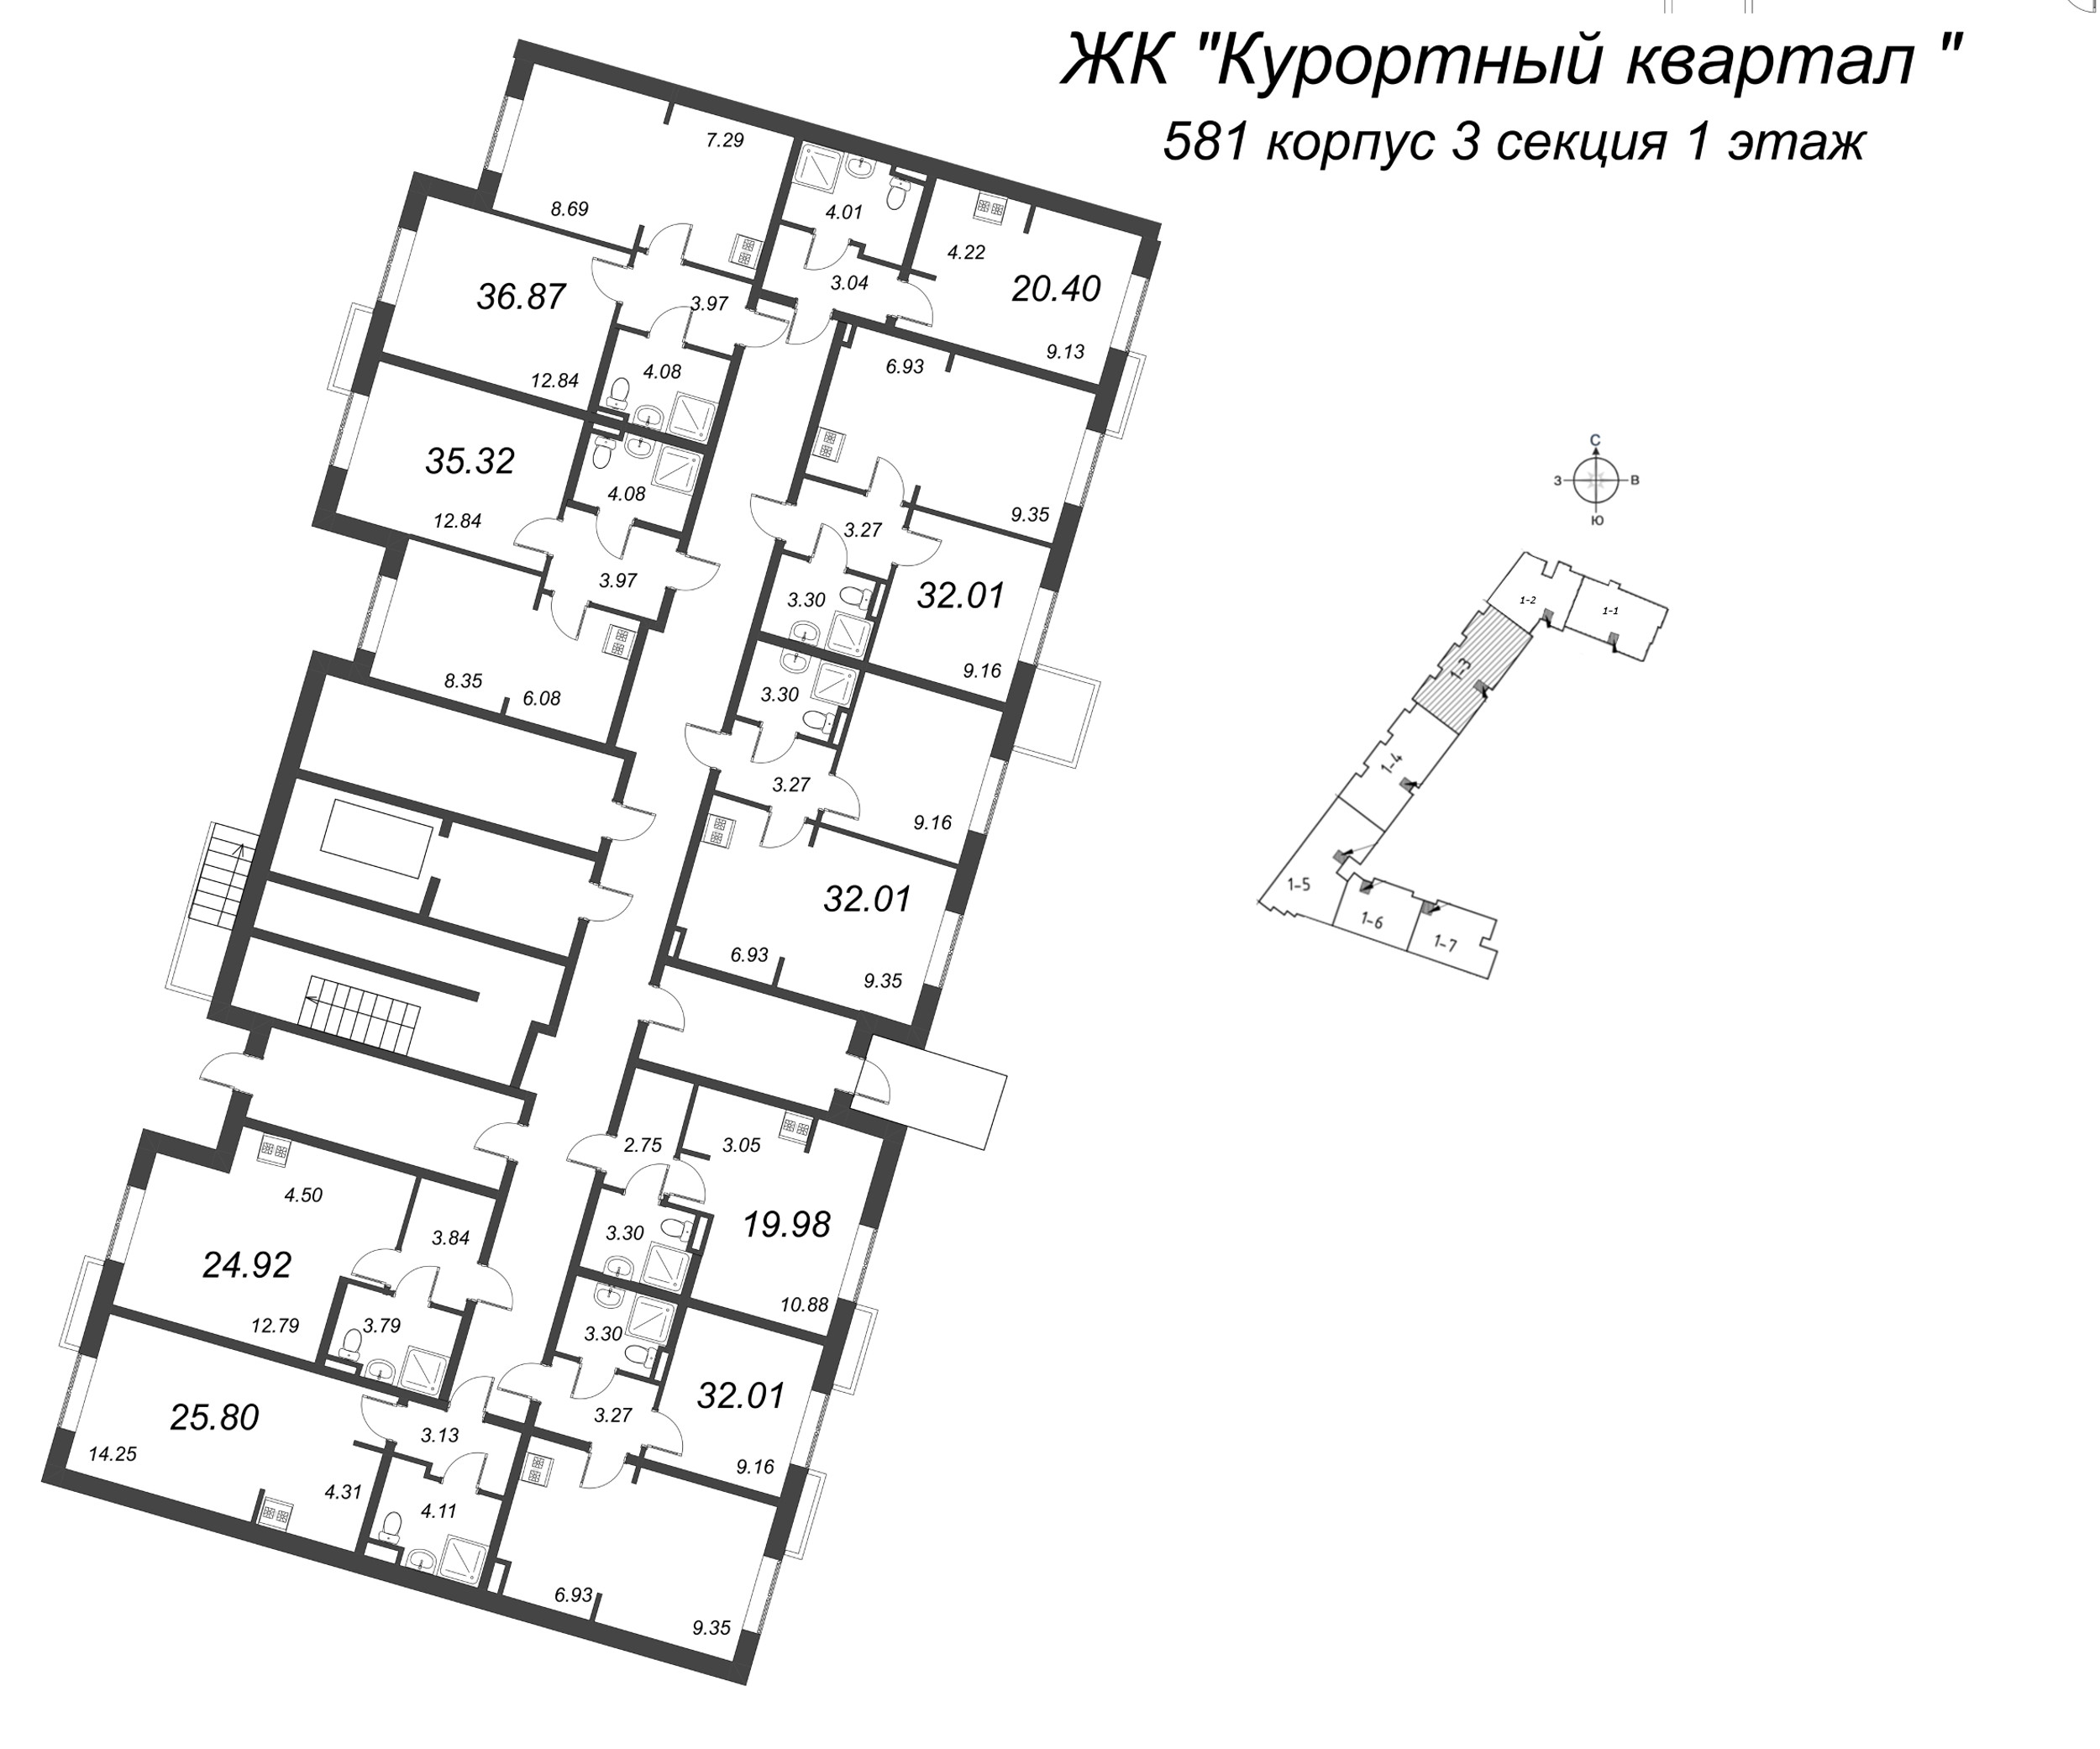 2-комнатная (Евро) квартира, 32.01 м² в ЖК "Курортный Квартал" - планировка этажа